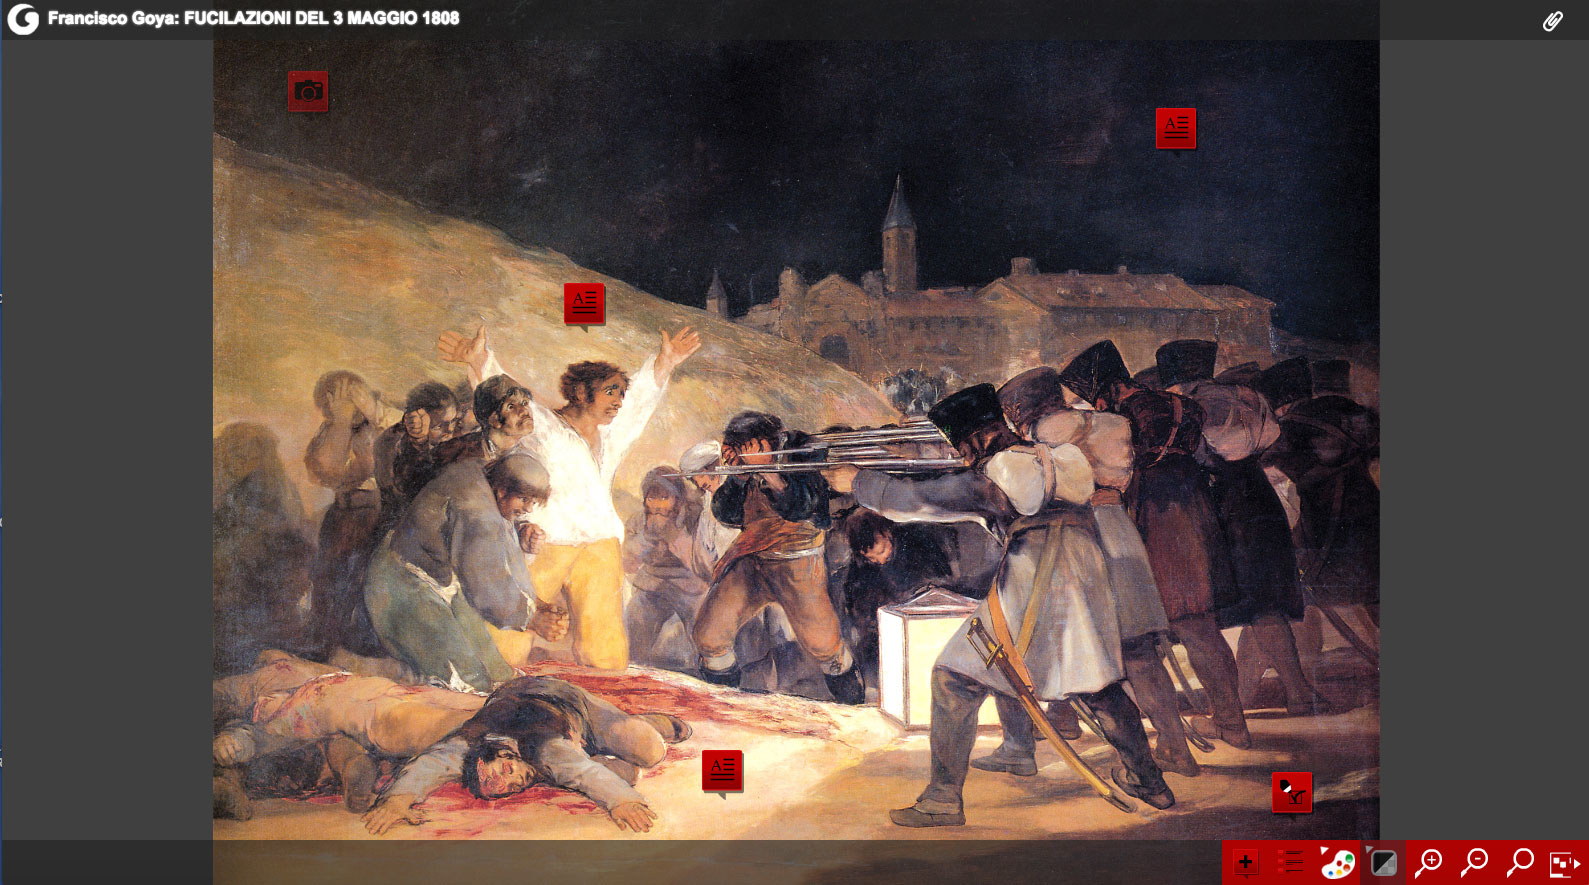 La fucilazione del 3 maggio 1808 (Francisco Goya y Lucientes)